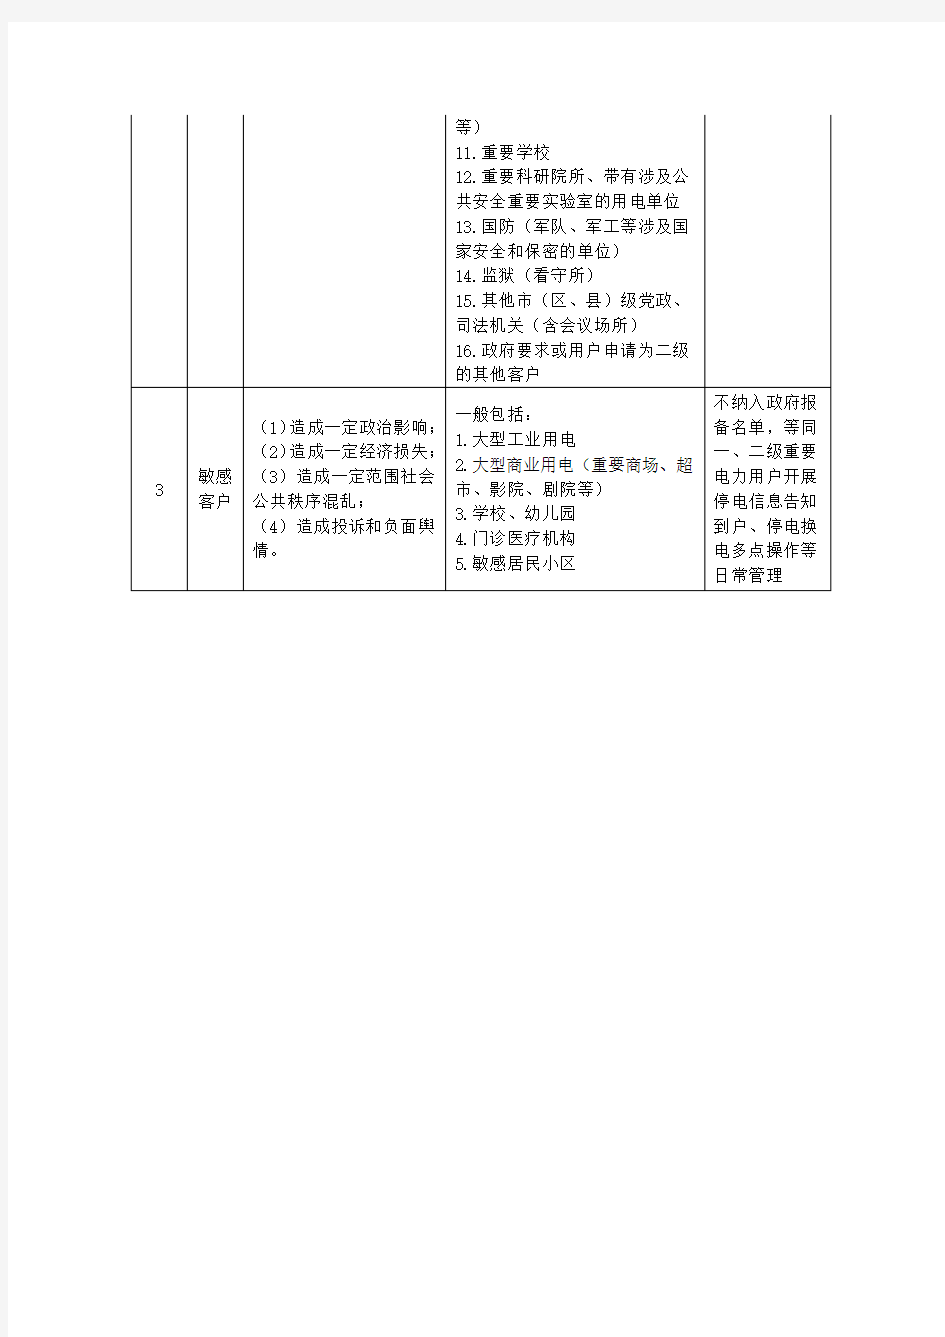 国网重庆市电力公司重要客户分级认定指导意见